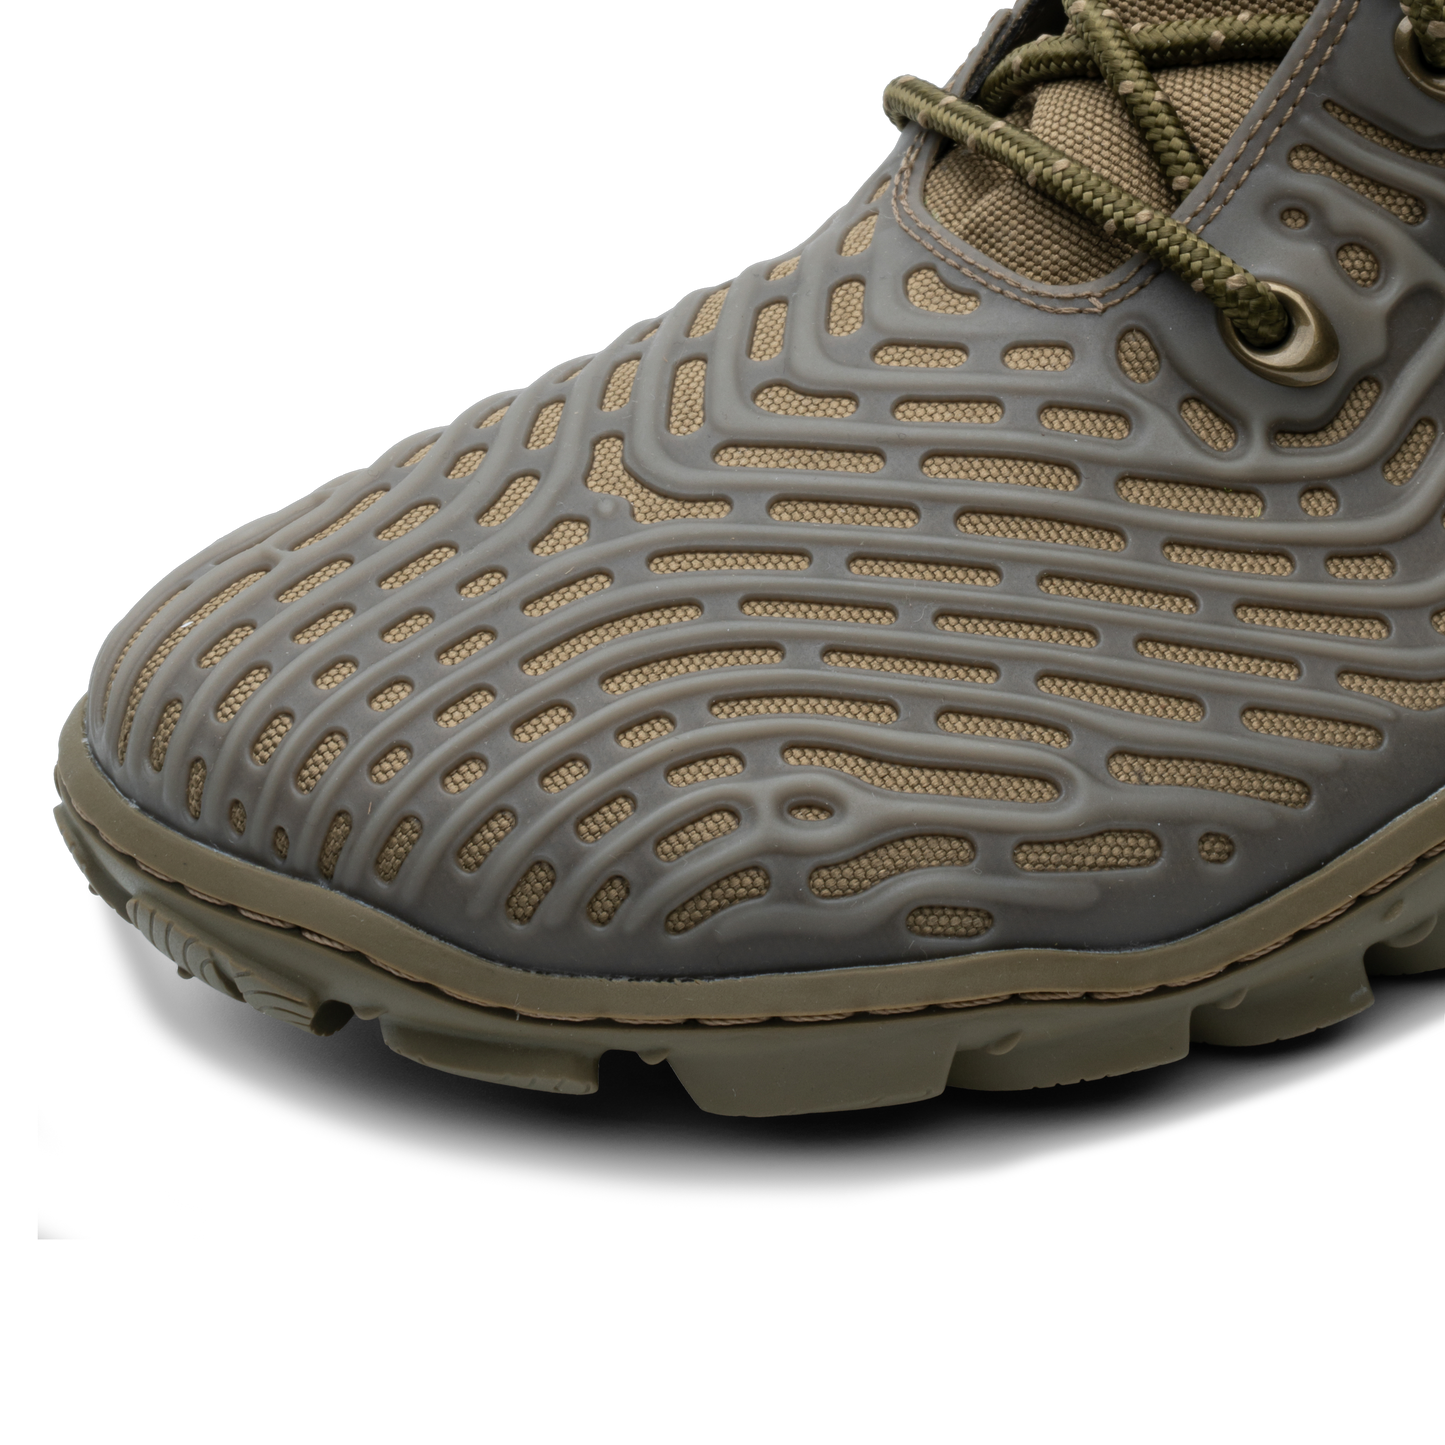 Nærbillede af Vivobarefoot Jungle ESC Mens sko i 'Invisible' varianten, designet som barfodssko med en jordnær grå farve og tekstureret mønster.